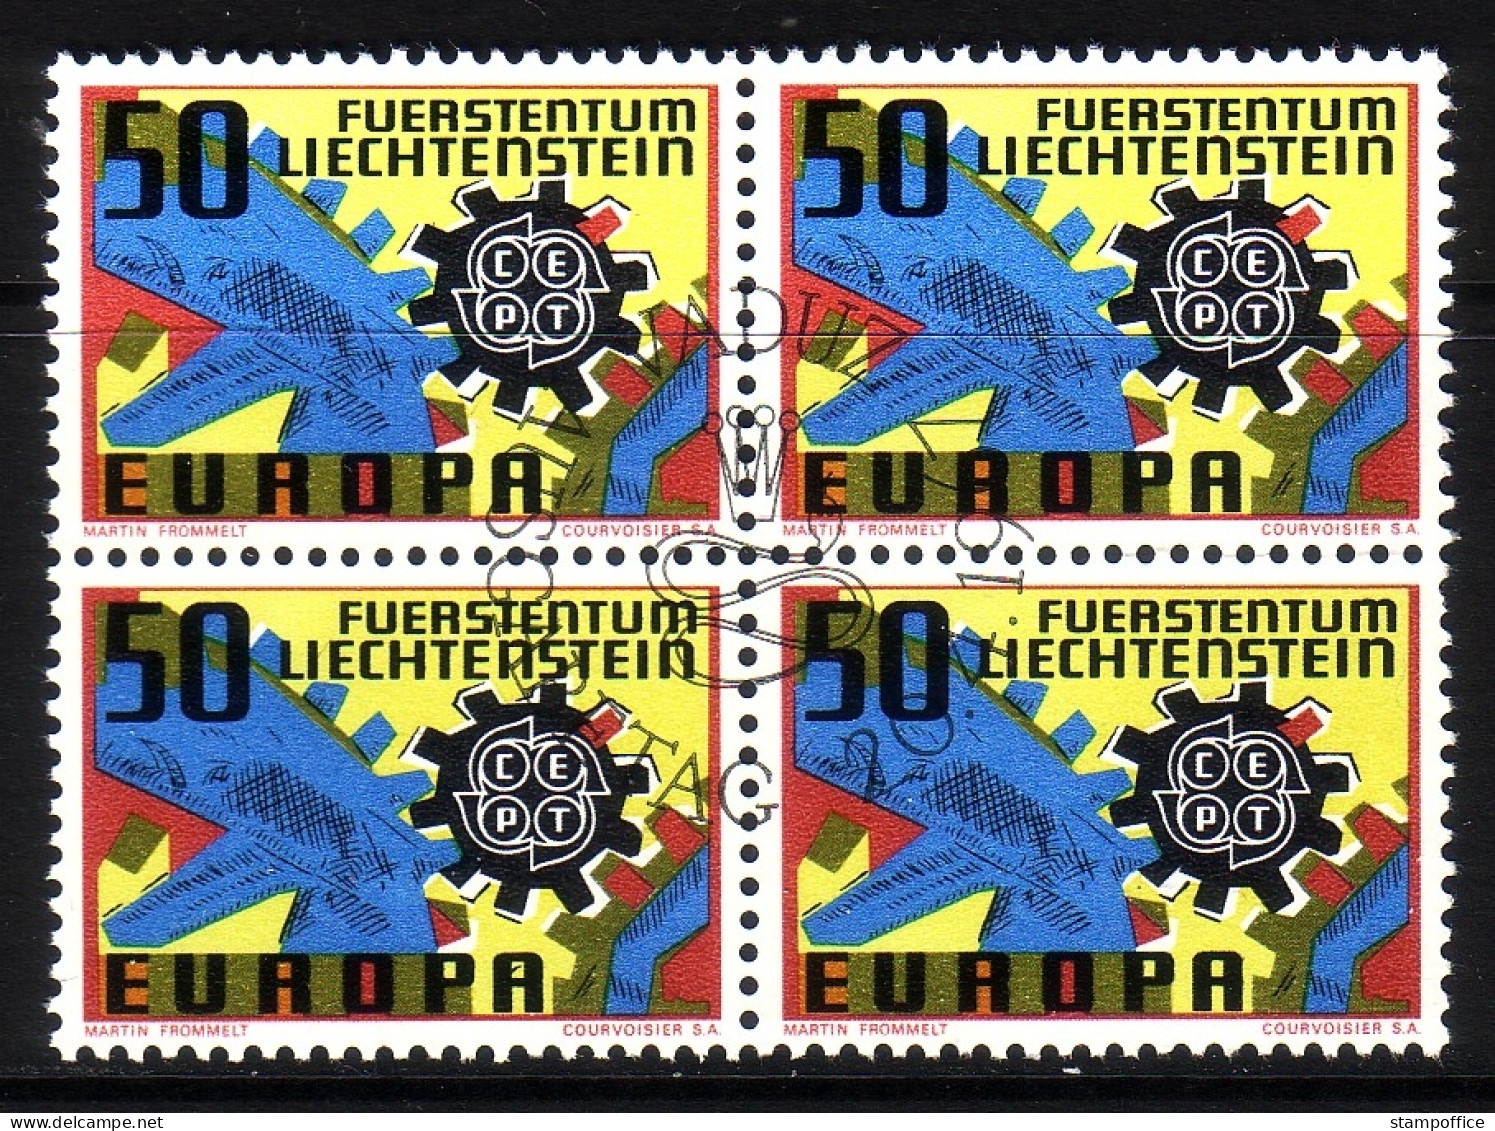 LIECHTENSTEIN MI-NR. 474 GESTEMPELT(USED) 4er BLOCK EUROPA 1967 ZAHNRÄDER - 1967